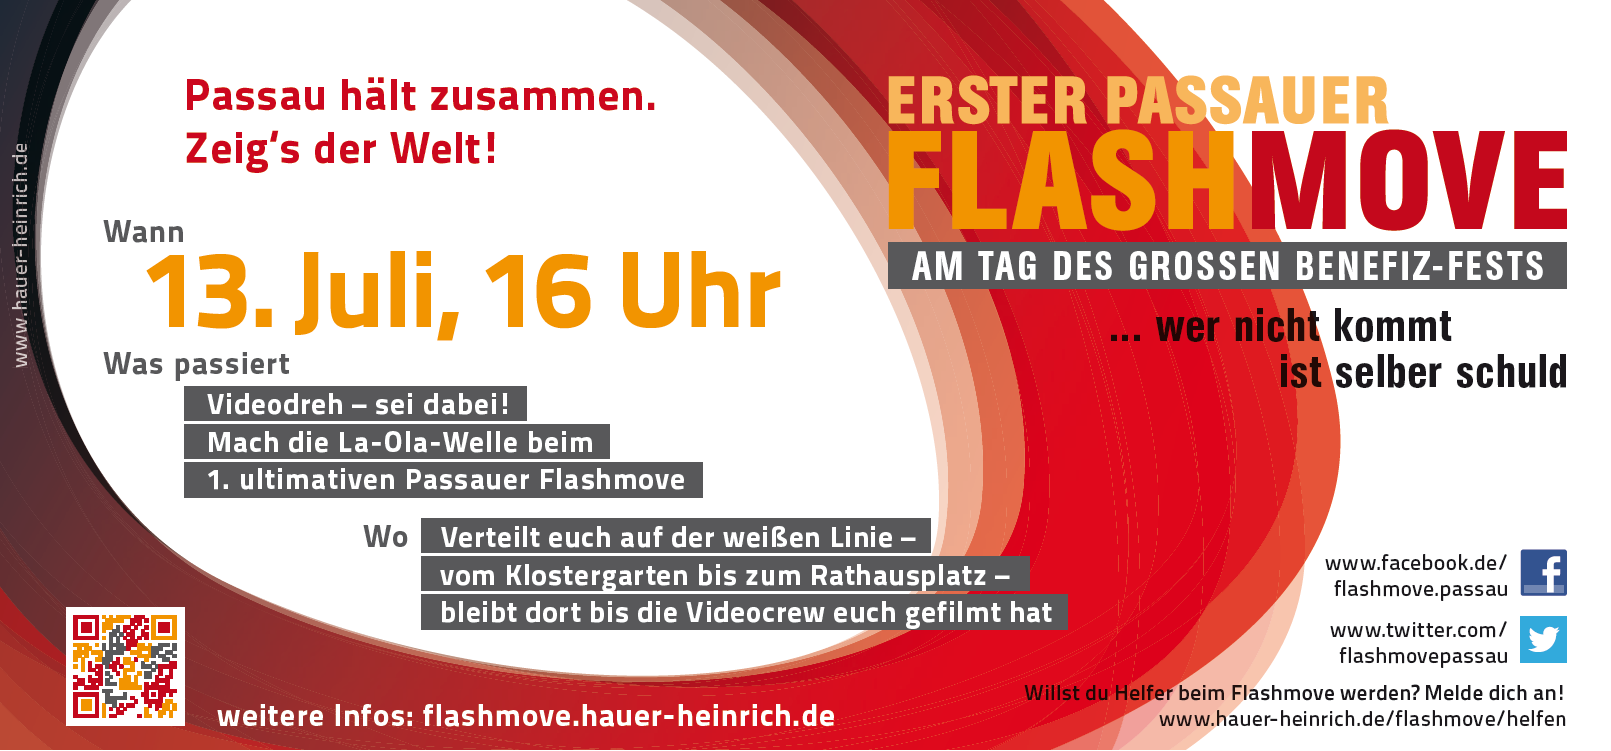 Einladung zum Flashmove am 16 Juli in Passau